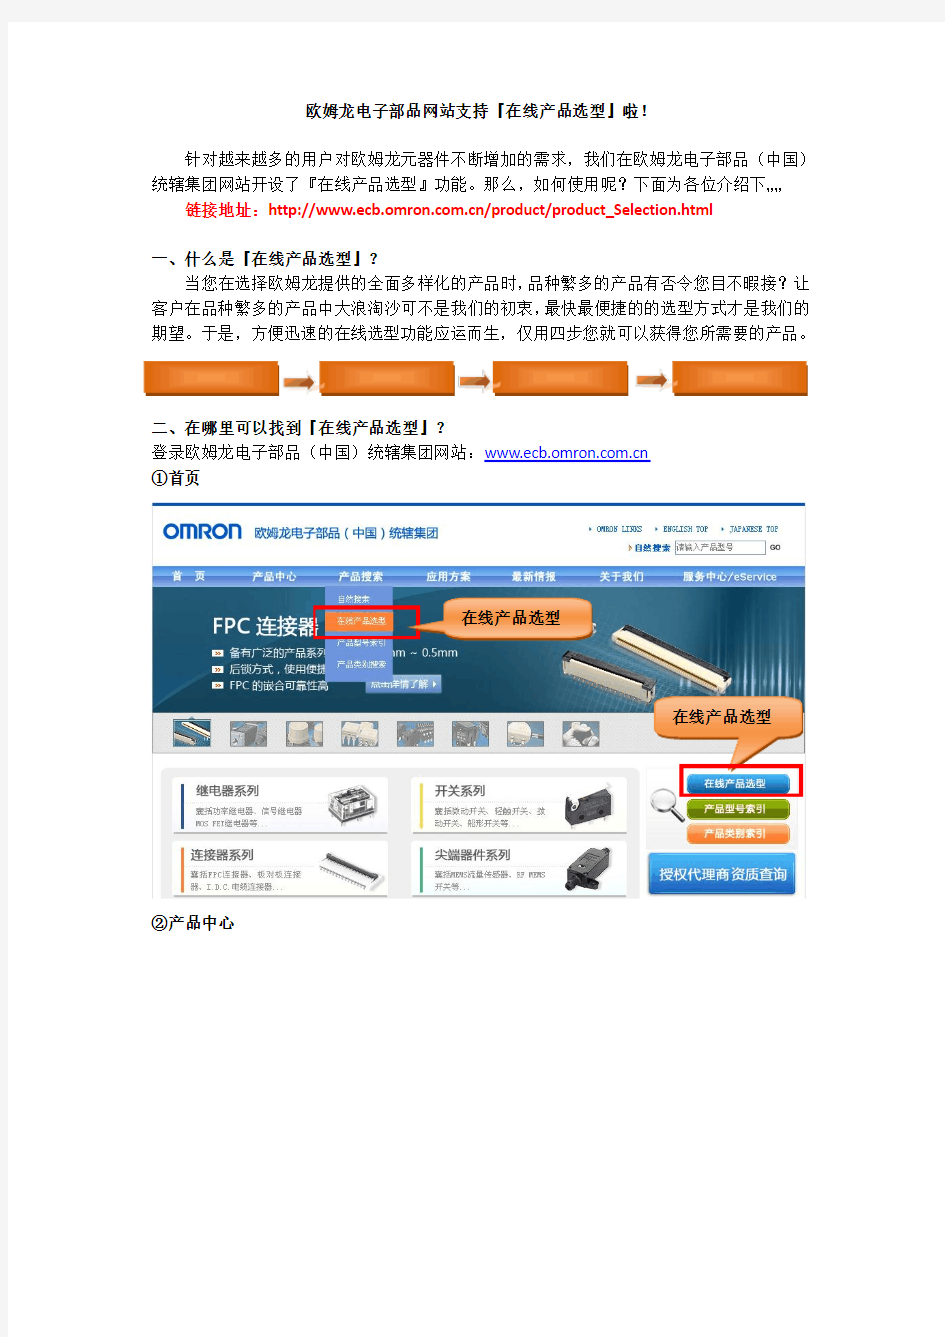 欧姆龙中国网站支持『在线产品选型』功能